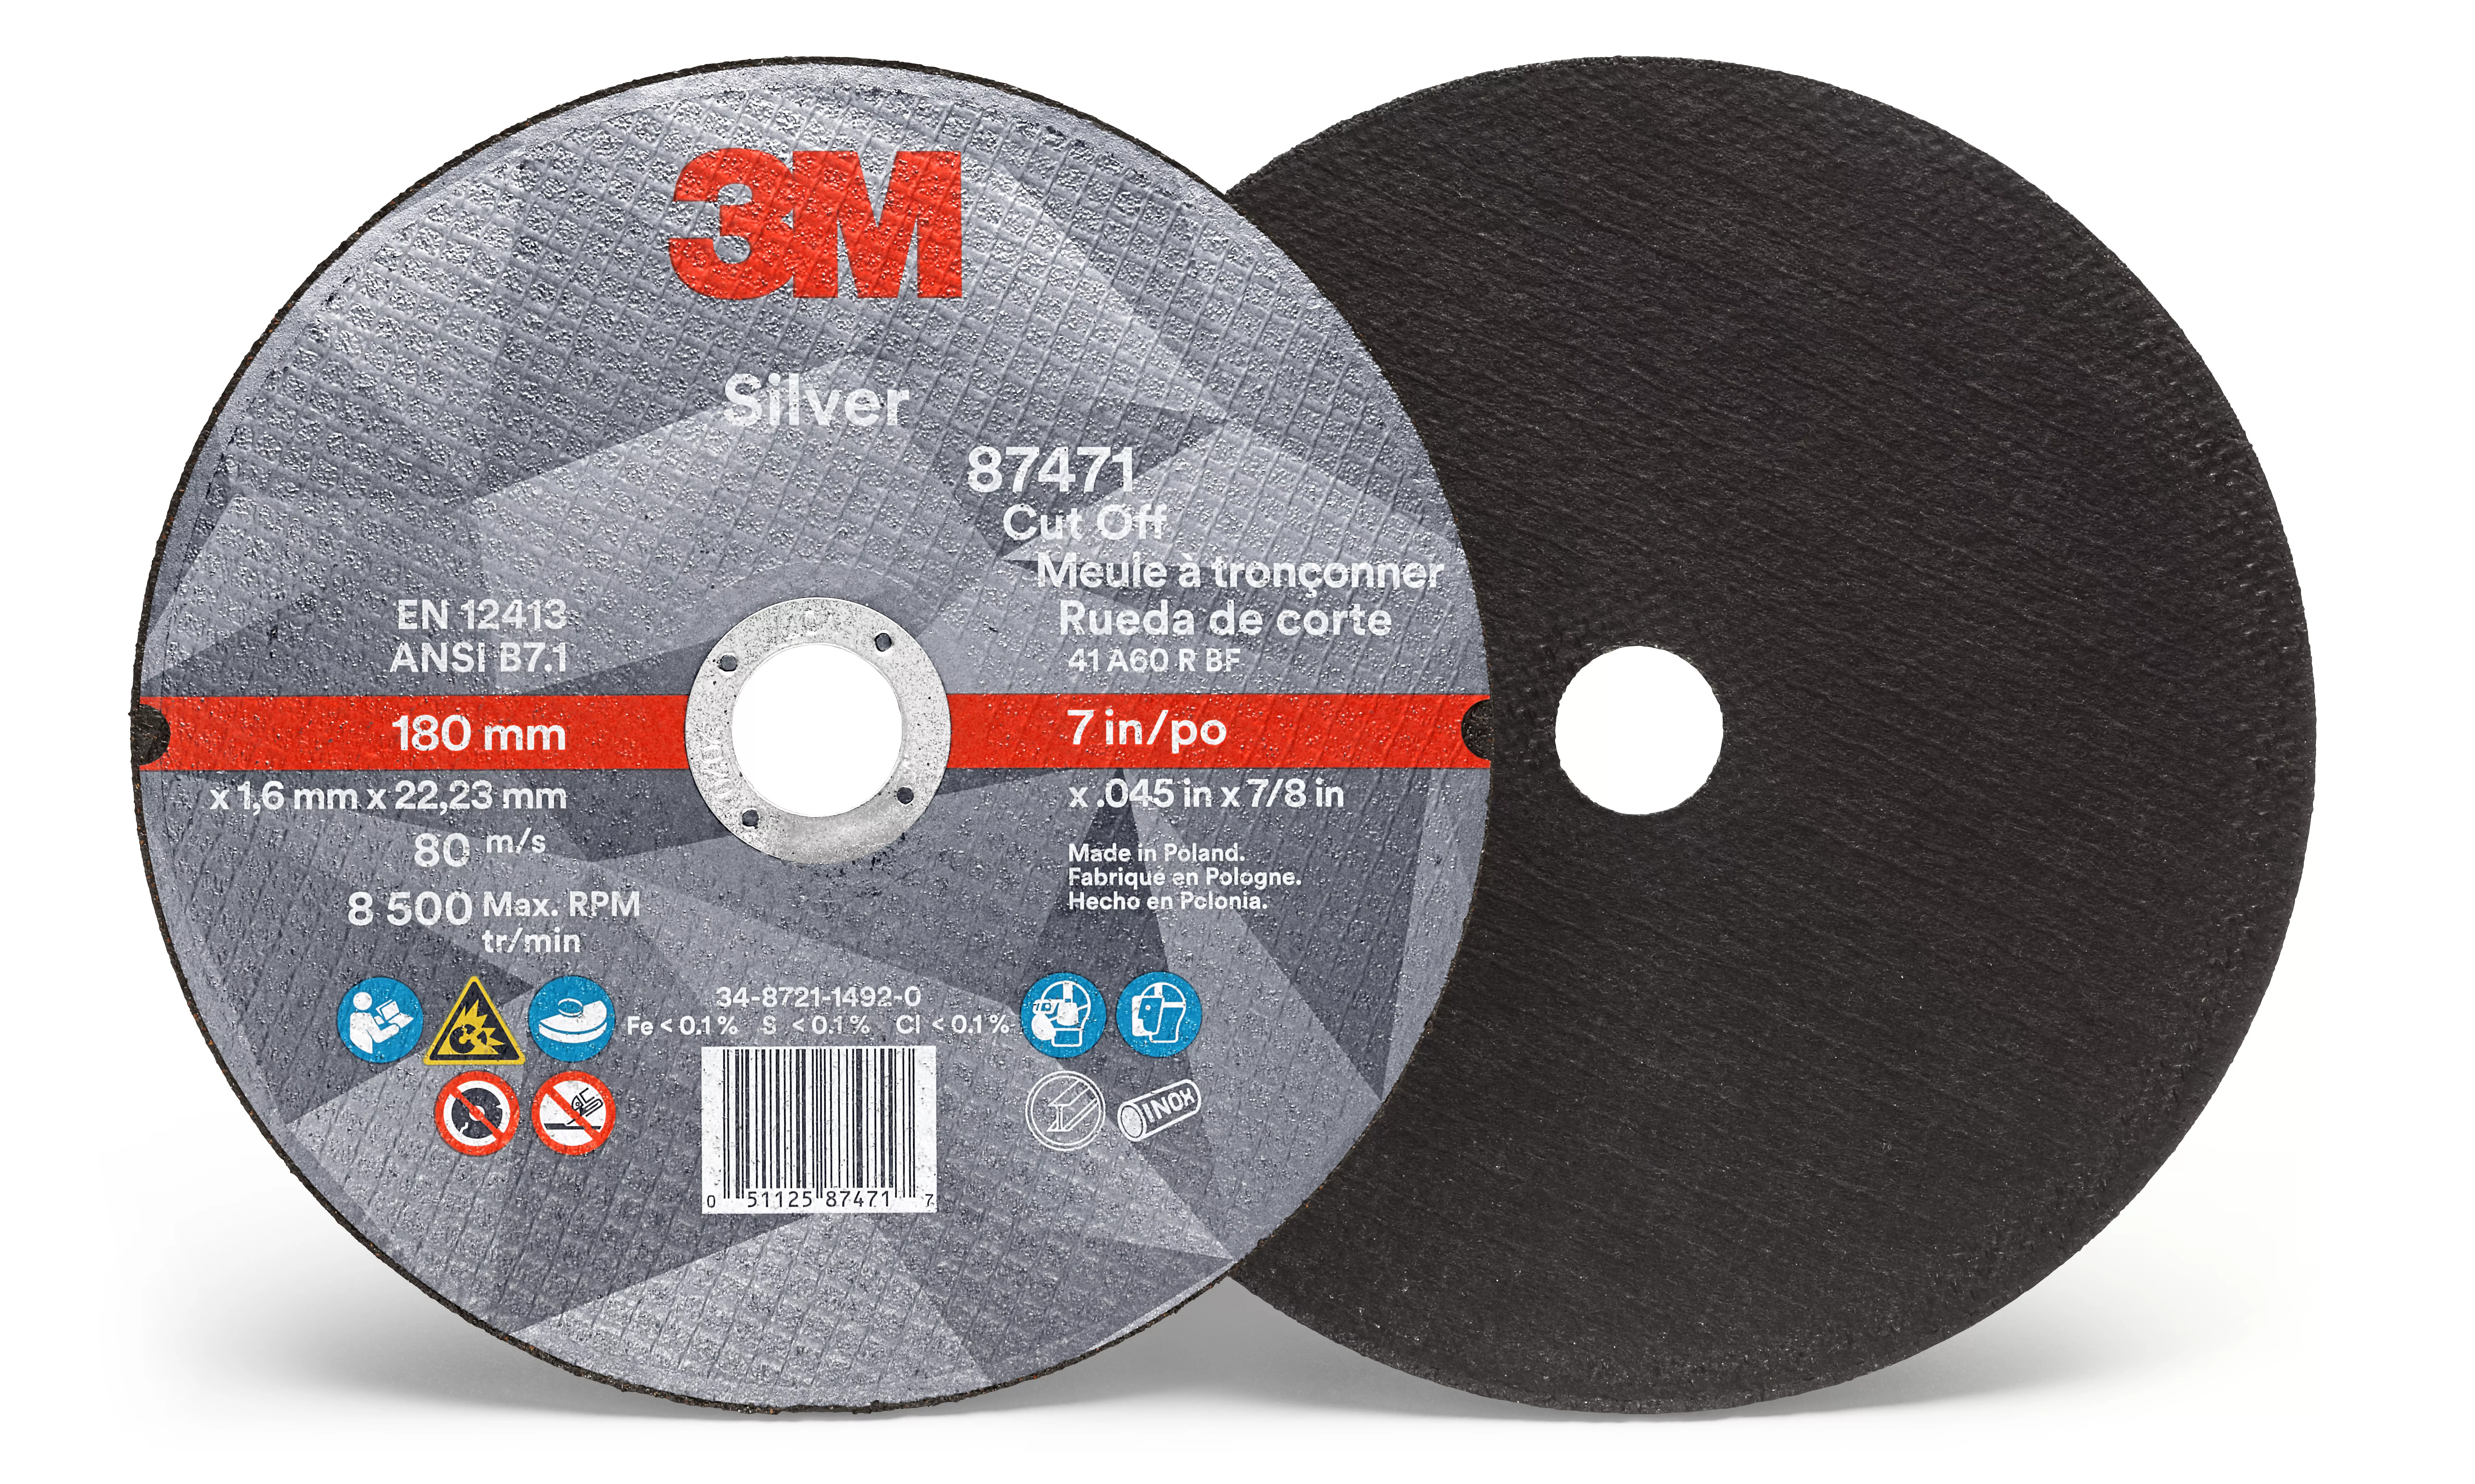 3M™ Silver Cut-Off Wheel, 87471, T1, 7 in x .045 in x 7/8 in, 25/Carton,
50 ea/Case